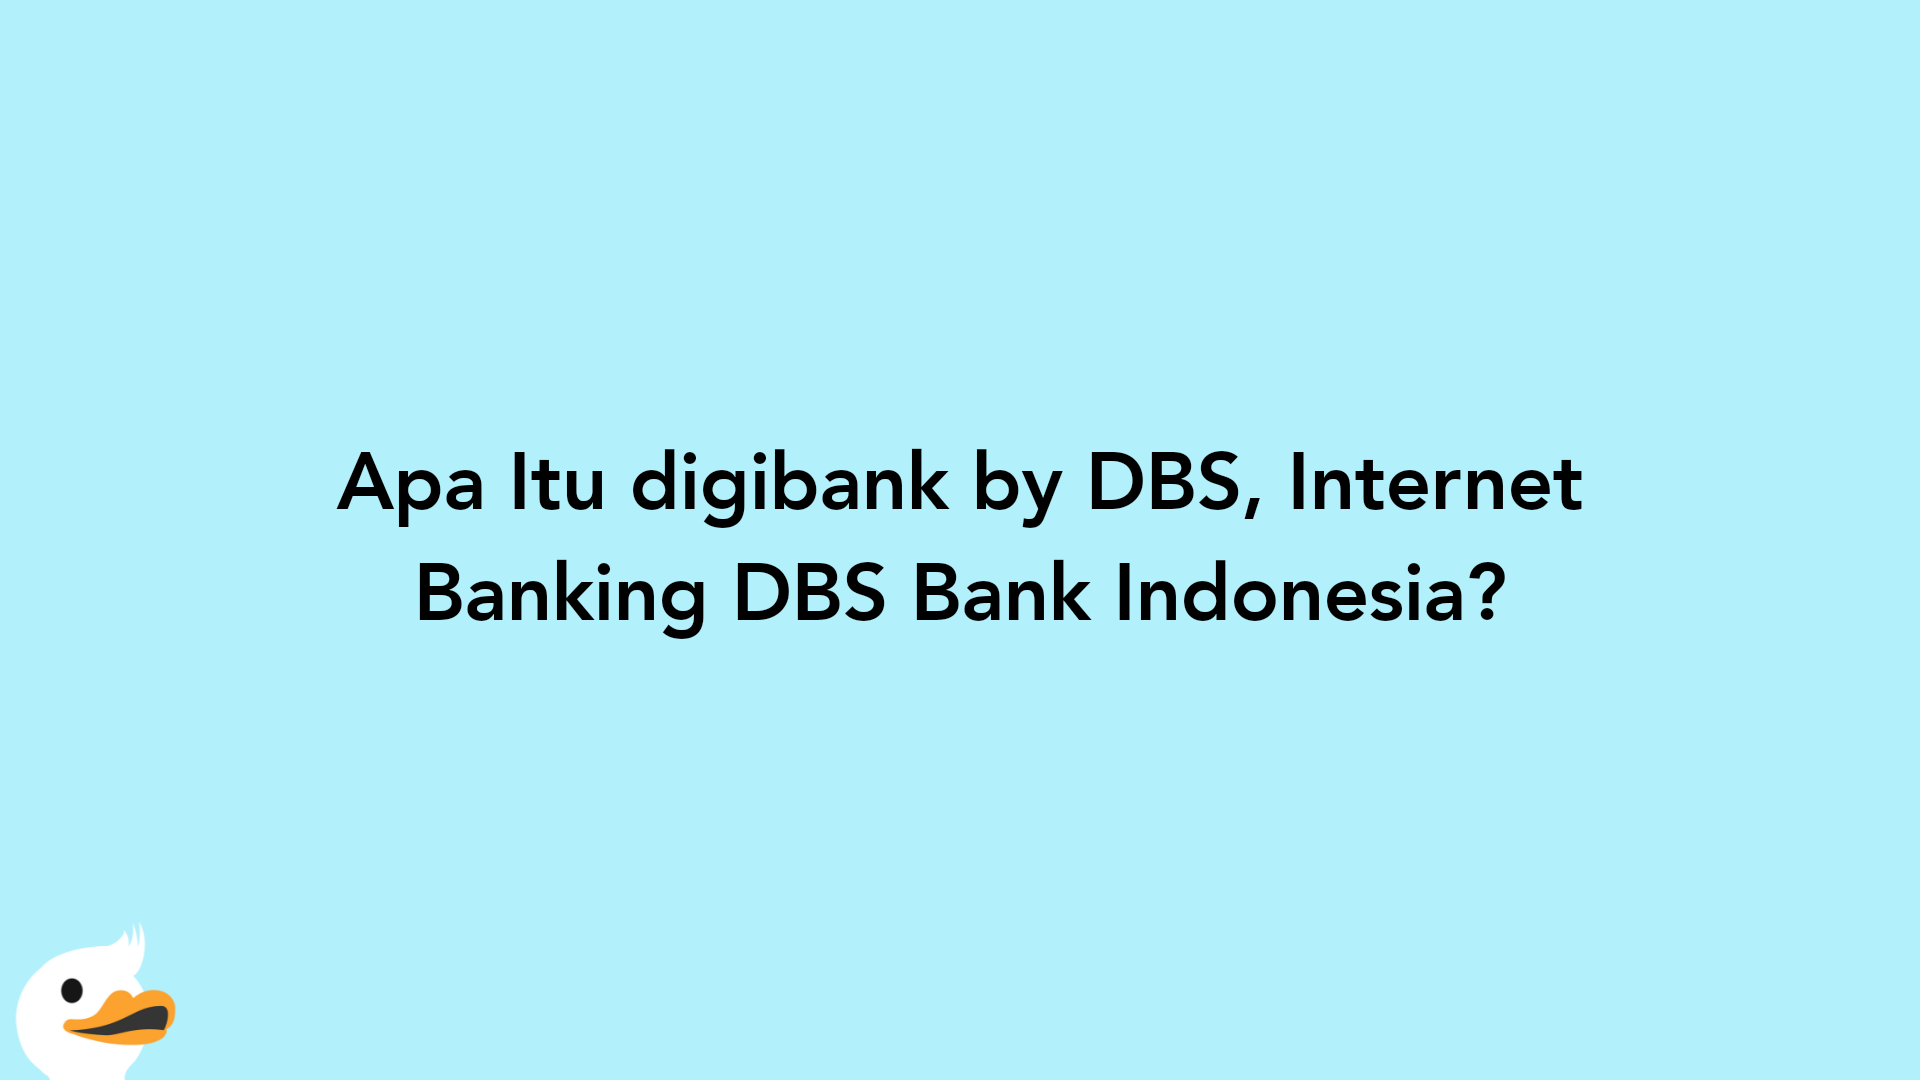 Apa Itu digibank by DBS, Internet Banking DBS Bank Indonesia?